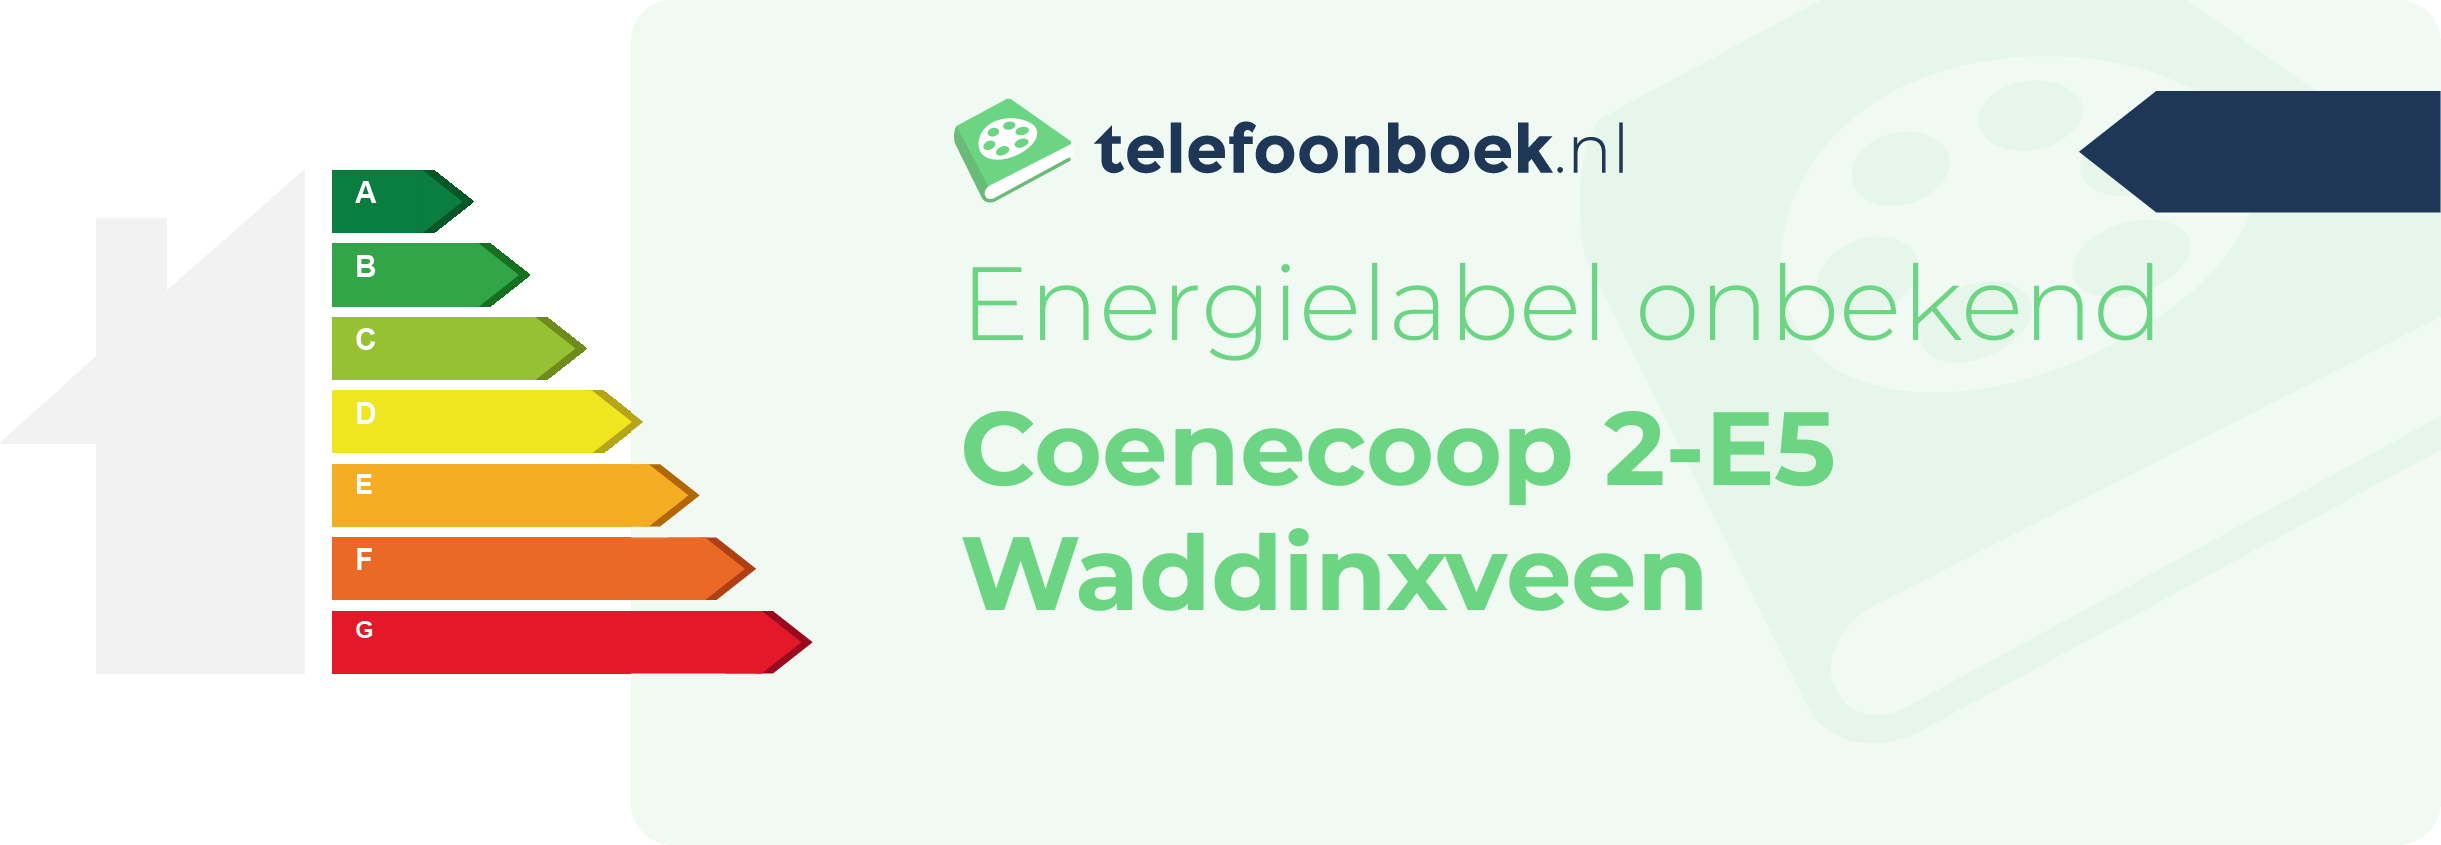 Energielabel Coenecoop 2-E5 Waddinxveen